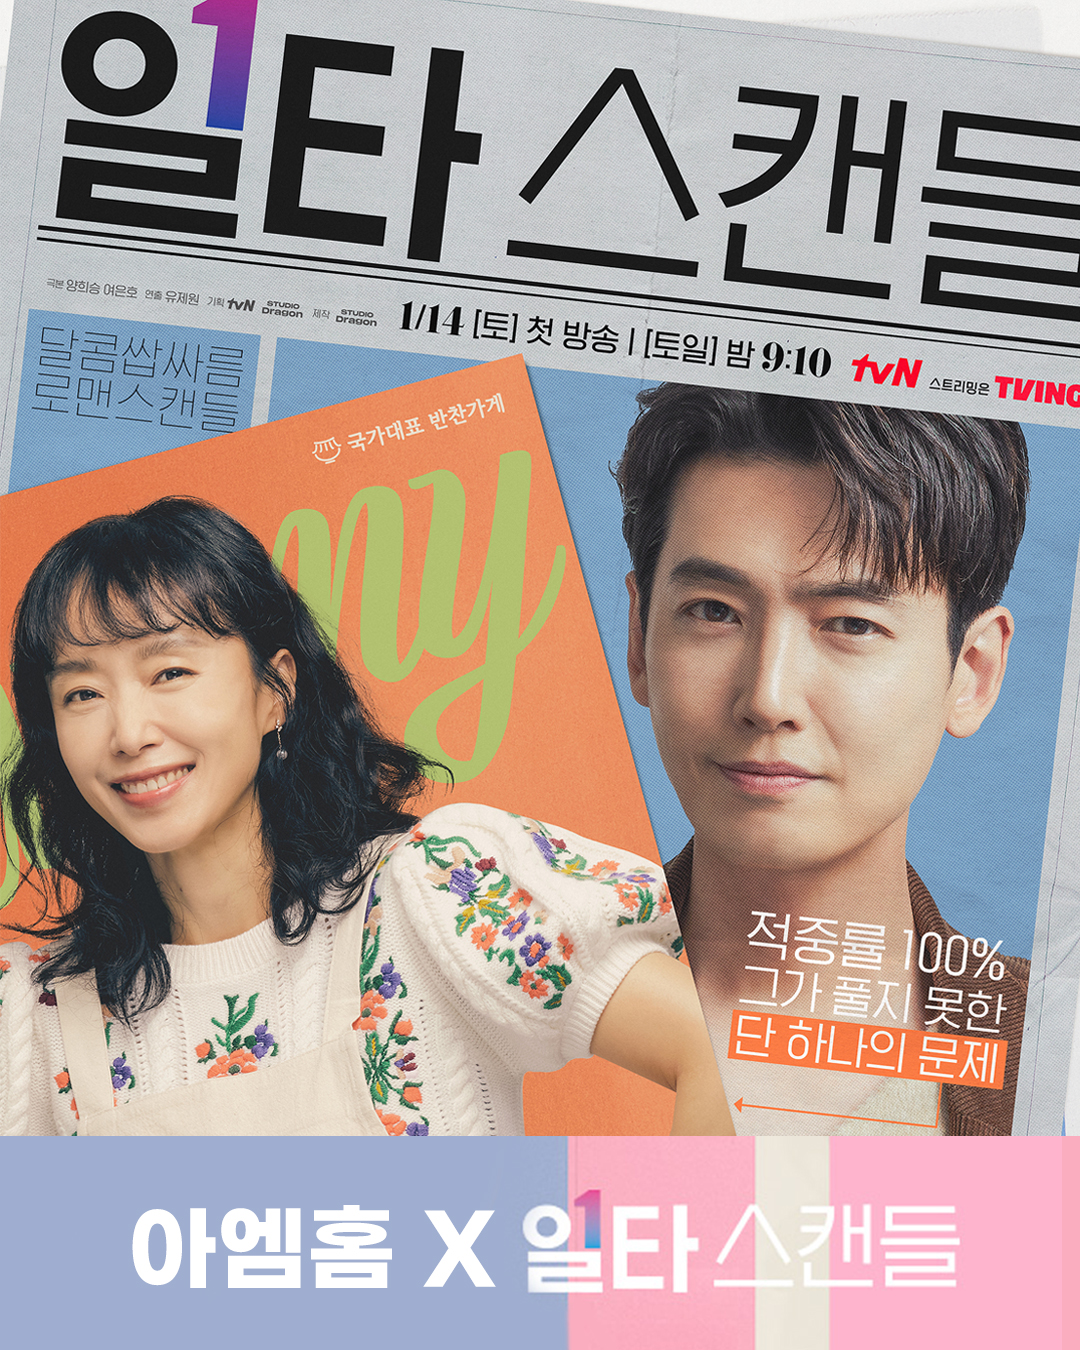 tvN 토일드라마 '일타스캔들' 아엠홈 협찬 상품